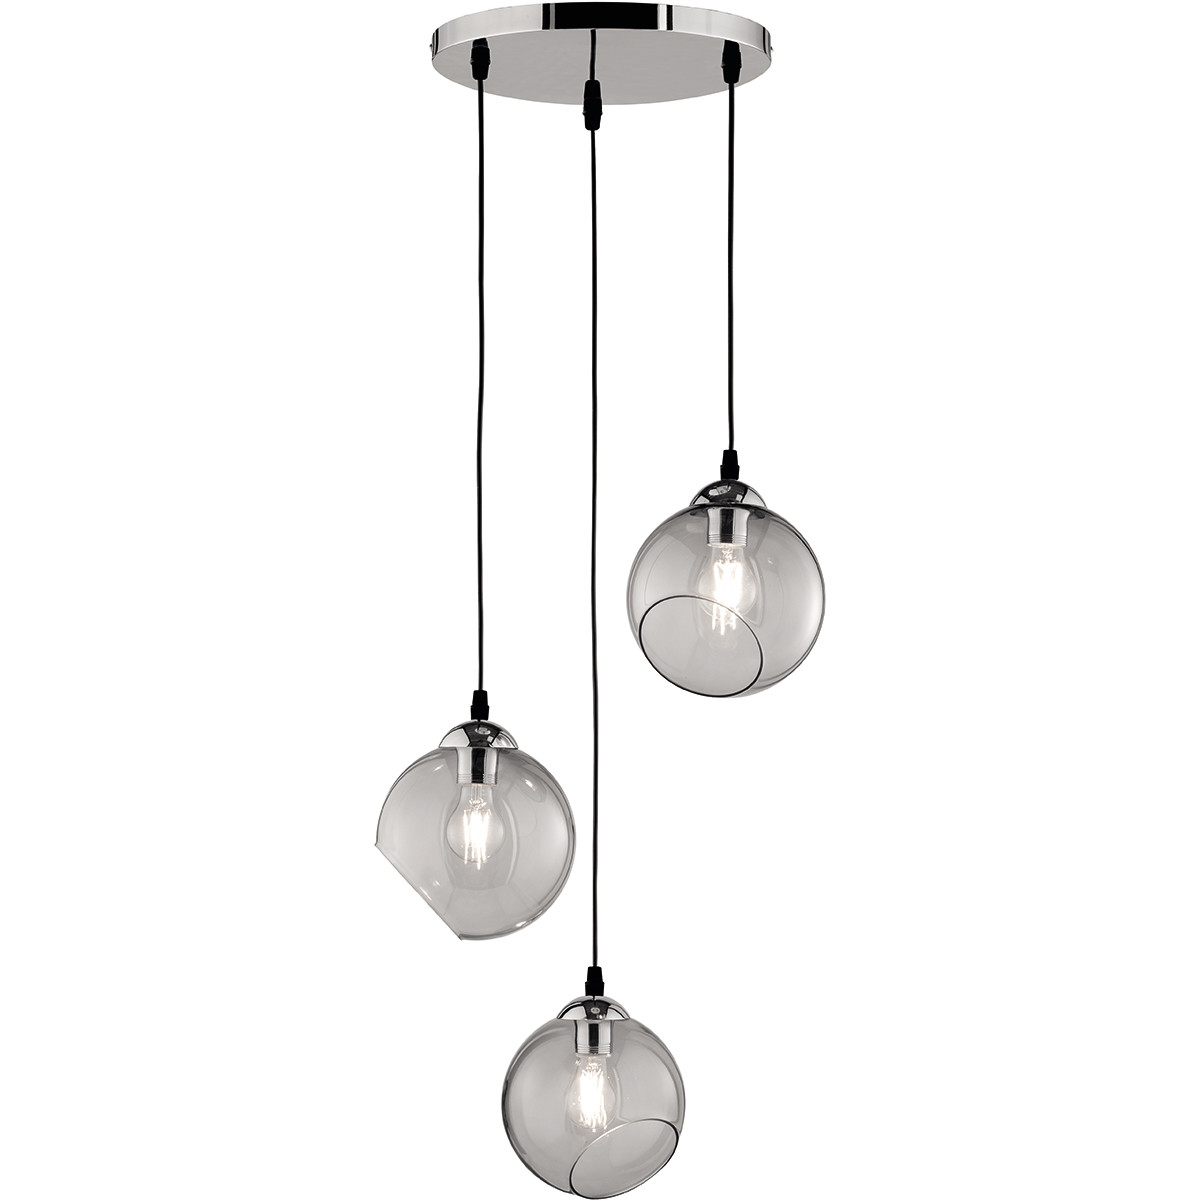 LED Hanglamp Trion Klino E27 Fitting 3-lichts Rond Mat Chroom Rookkleur Aluminium